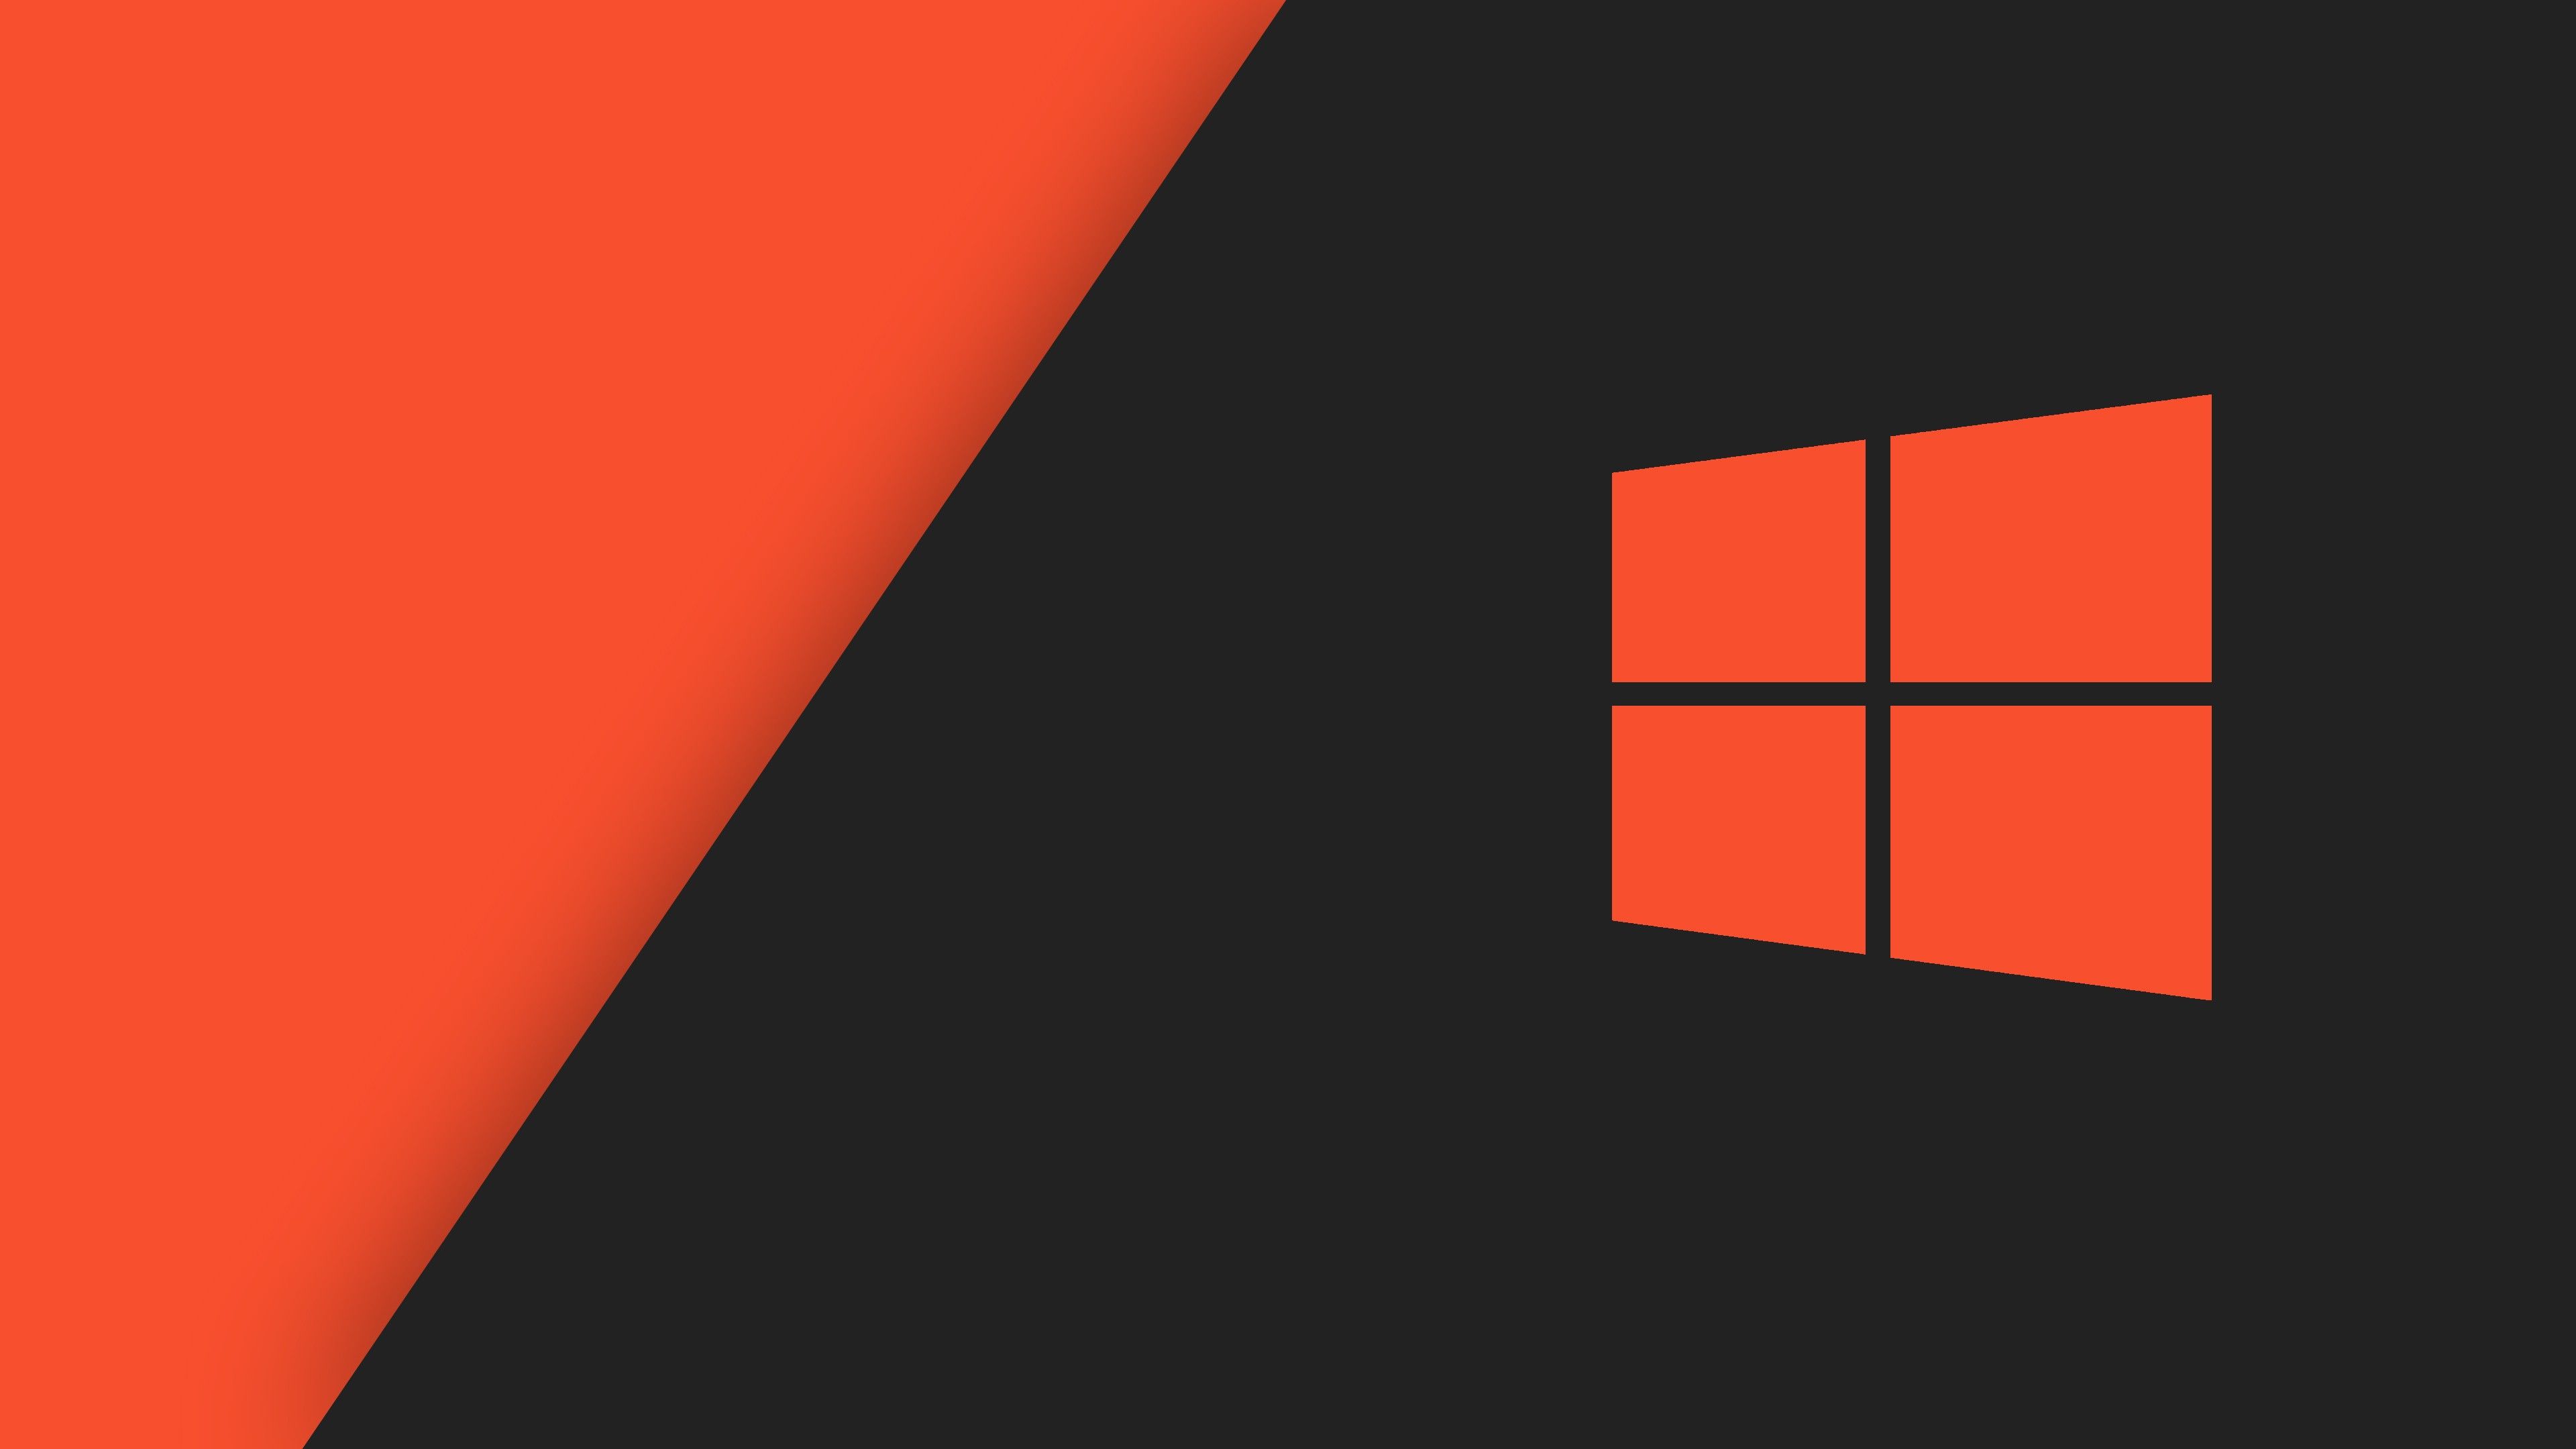 Windows 10 là phiên bản hệ điều hành tuyệt vời, và giờ đây bạn có thể tải ngay những hình nền máy tính cam tuyệt đẹp cho Windows 10 trên trang Wallpaper Cave. Sự kết hợp giữa màu cam và hệ điều hành mới nhất sẽ khiến chiếc máy tính của bạn trở nên nổi bật và đặc biệt hơn.